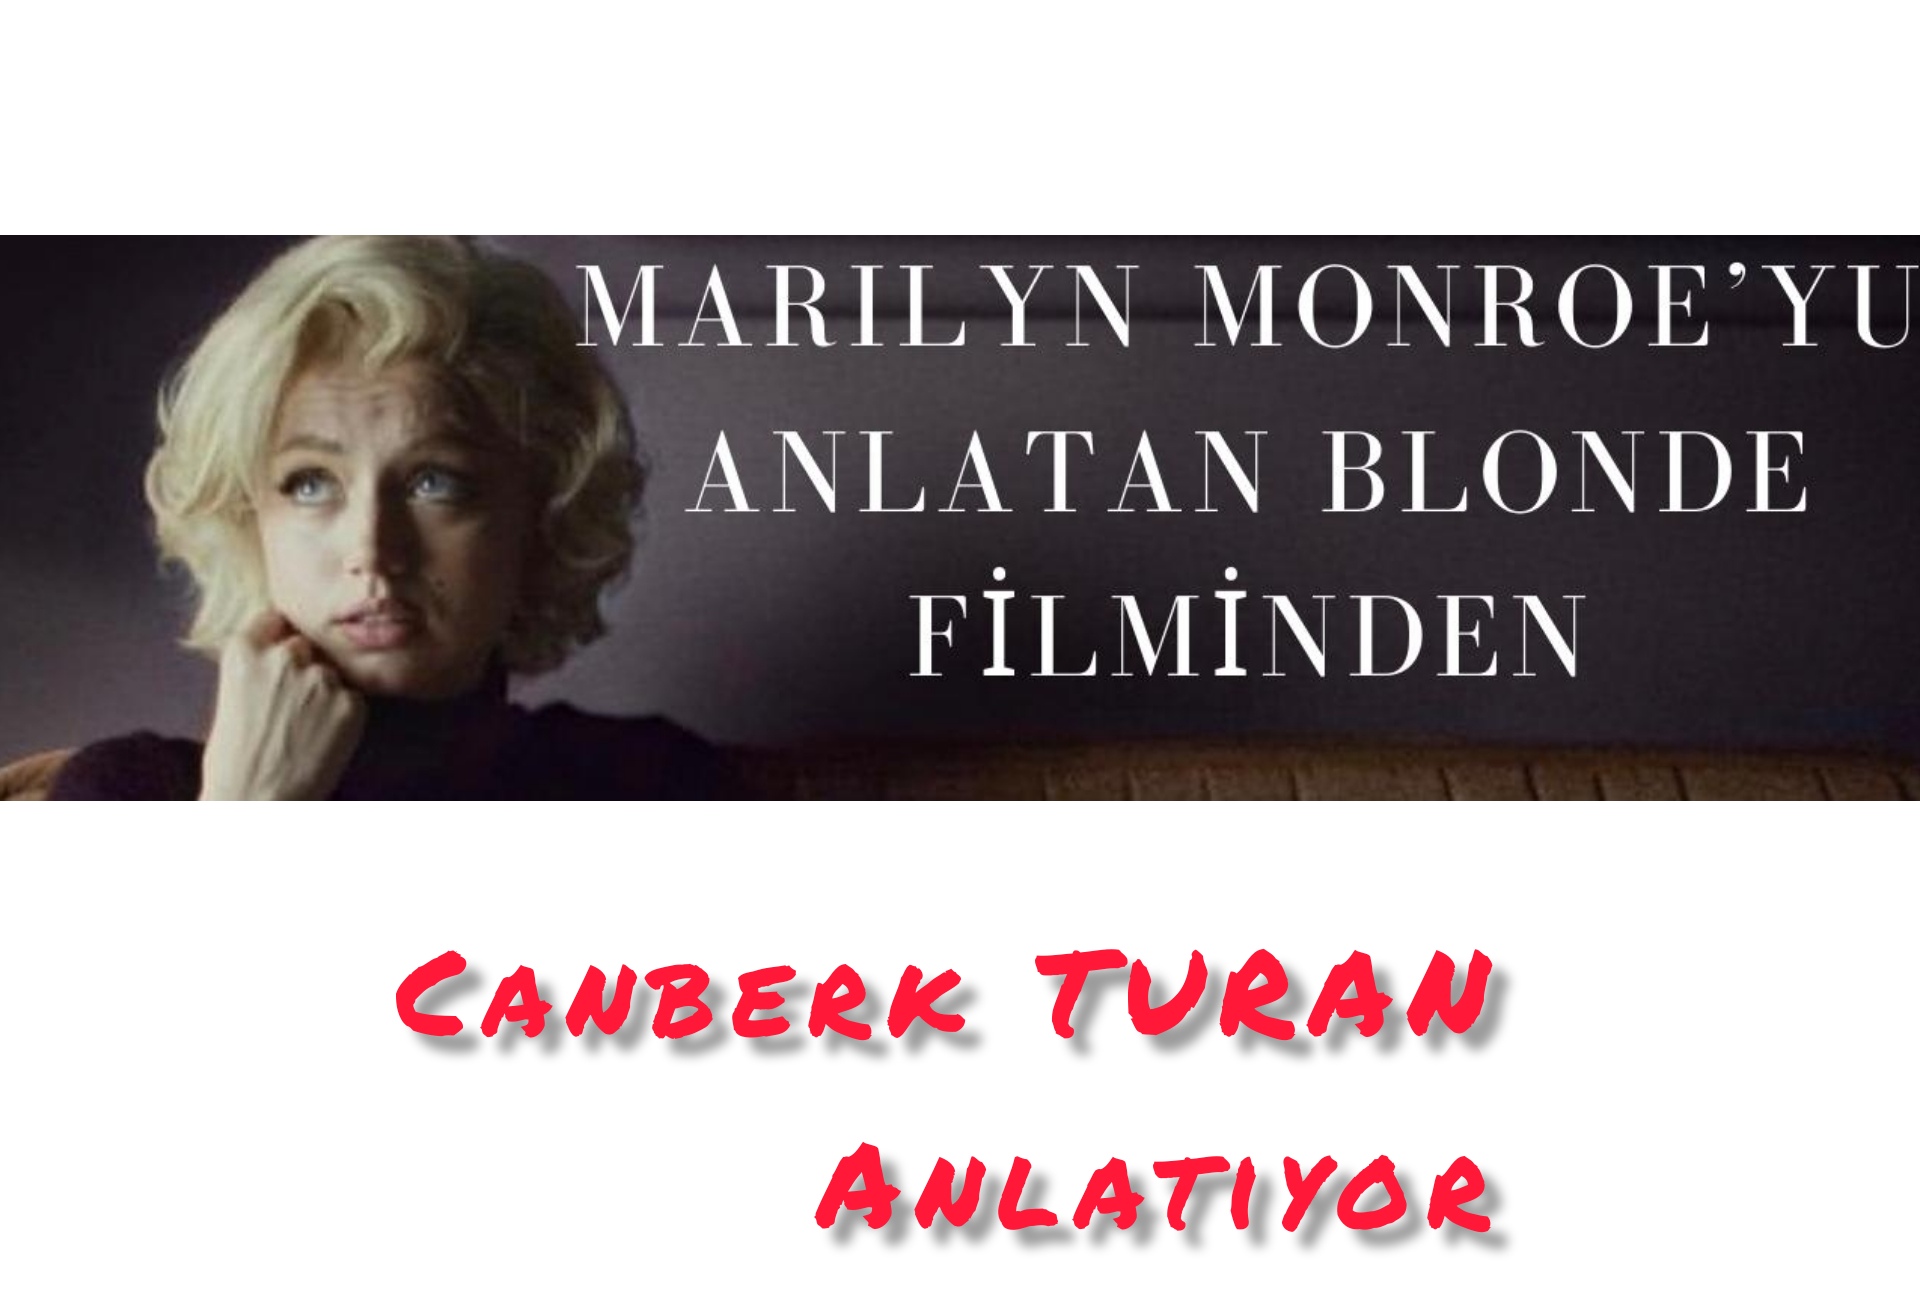 Canberk TURAN Anlatıyor: Marilyn MONROE/BLONDE